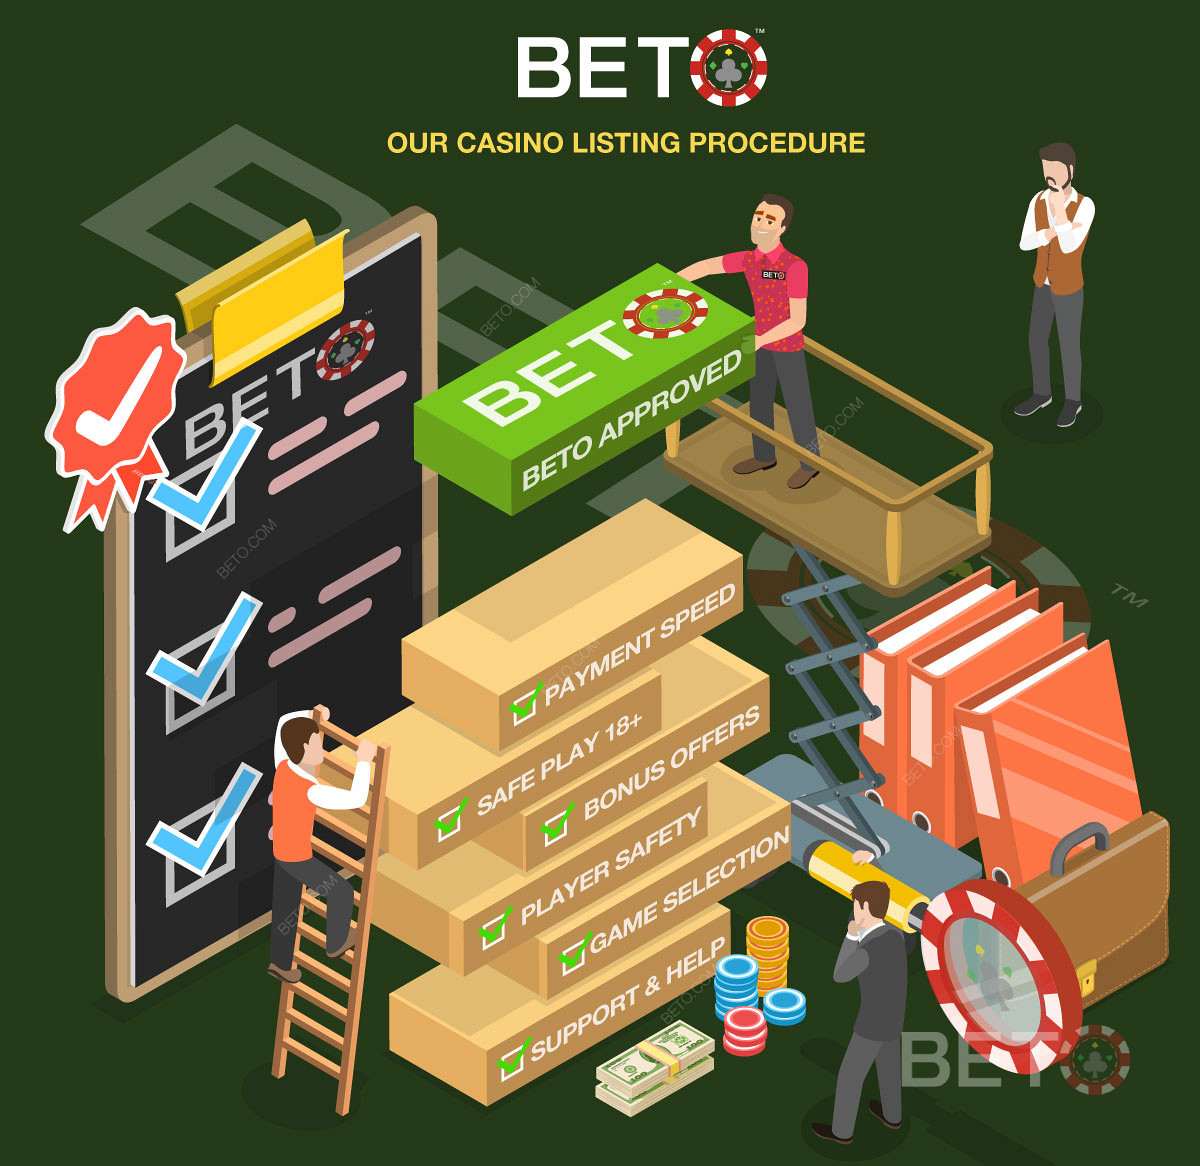 Procesul detaliat de revizuire a cazinoului pe BETO.com